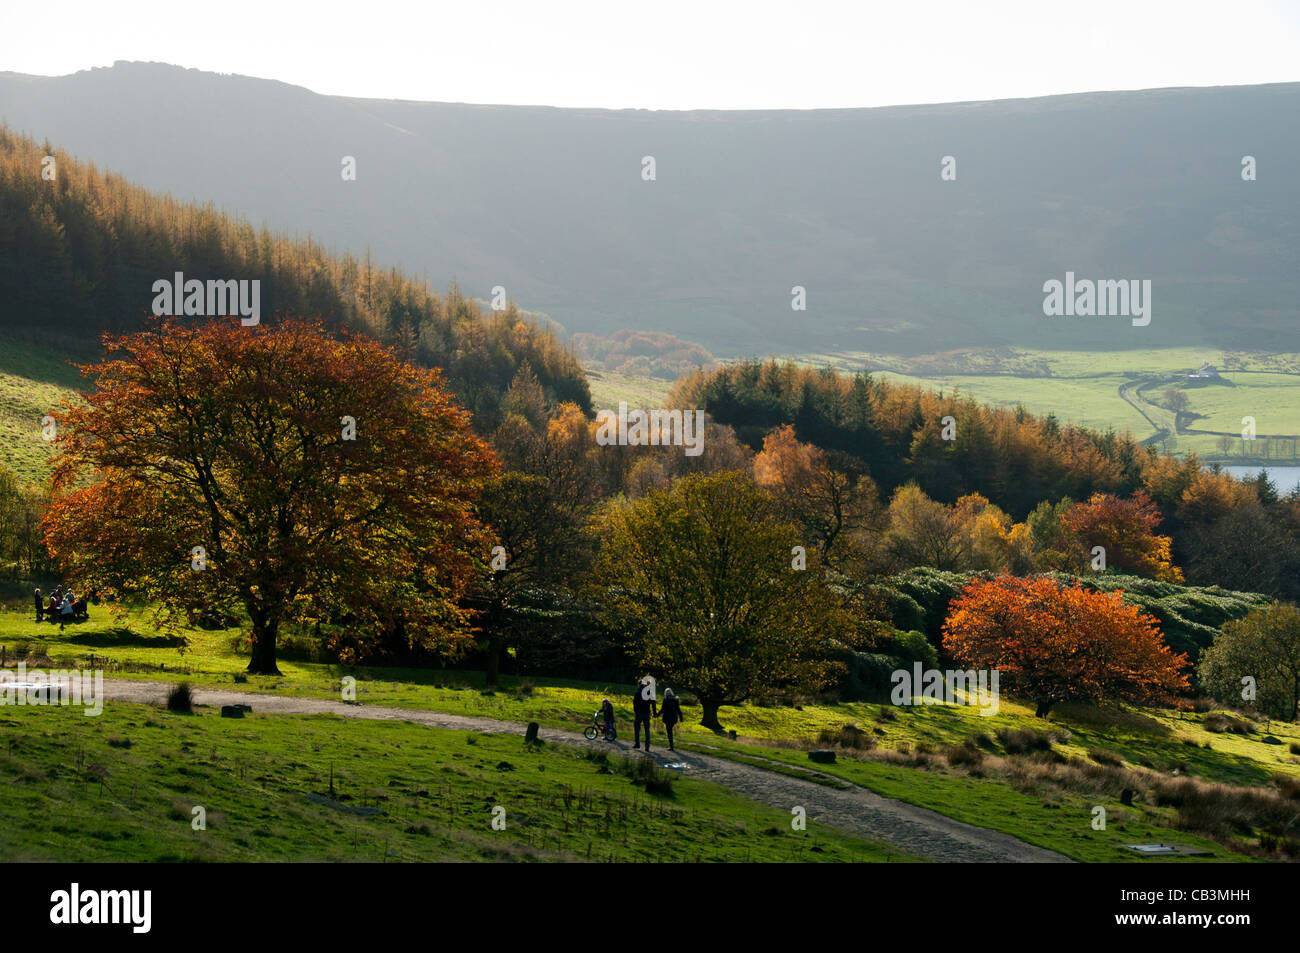 Herbstfarben im Dove Stone Reservoir, Saddleworth, Oldham, Greater Manchester, England, Großbritannien. Wimberry Stones Brow Behind. Stockfoto